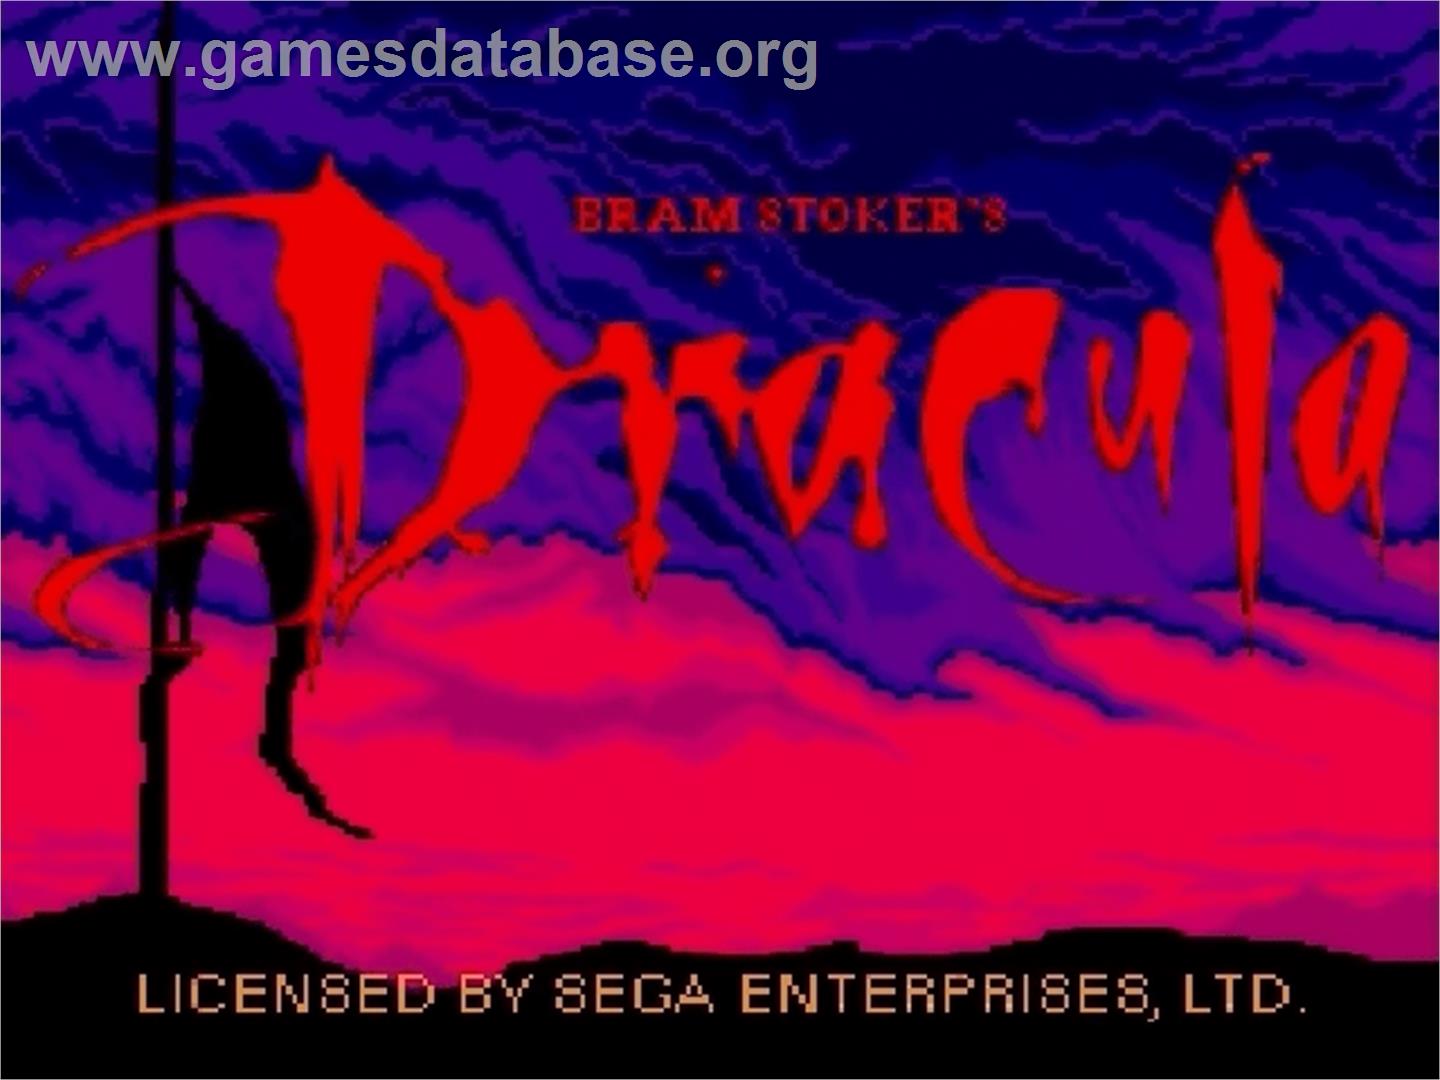 Bram Stoker's Dracula - Sega Genesis - Artwork - Title Screen